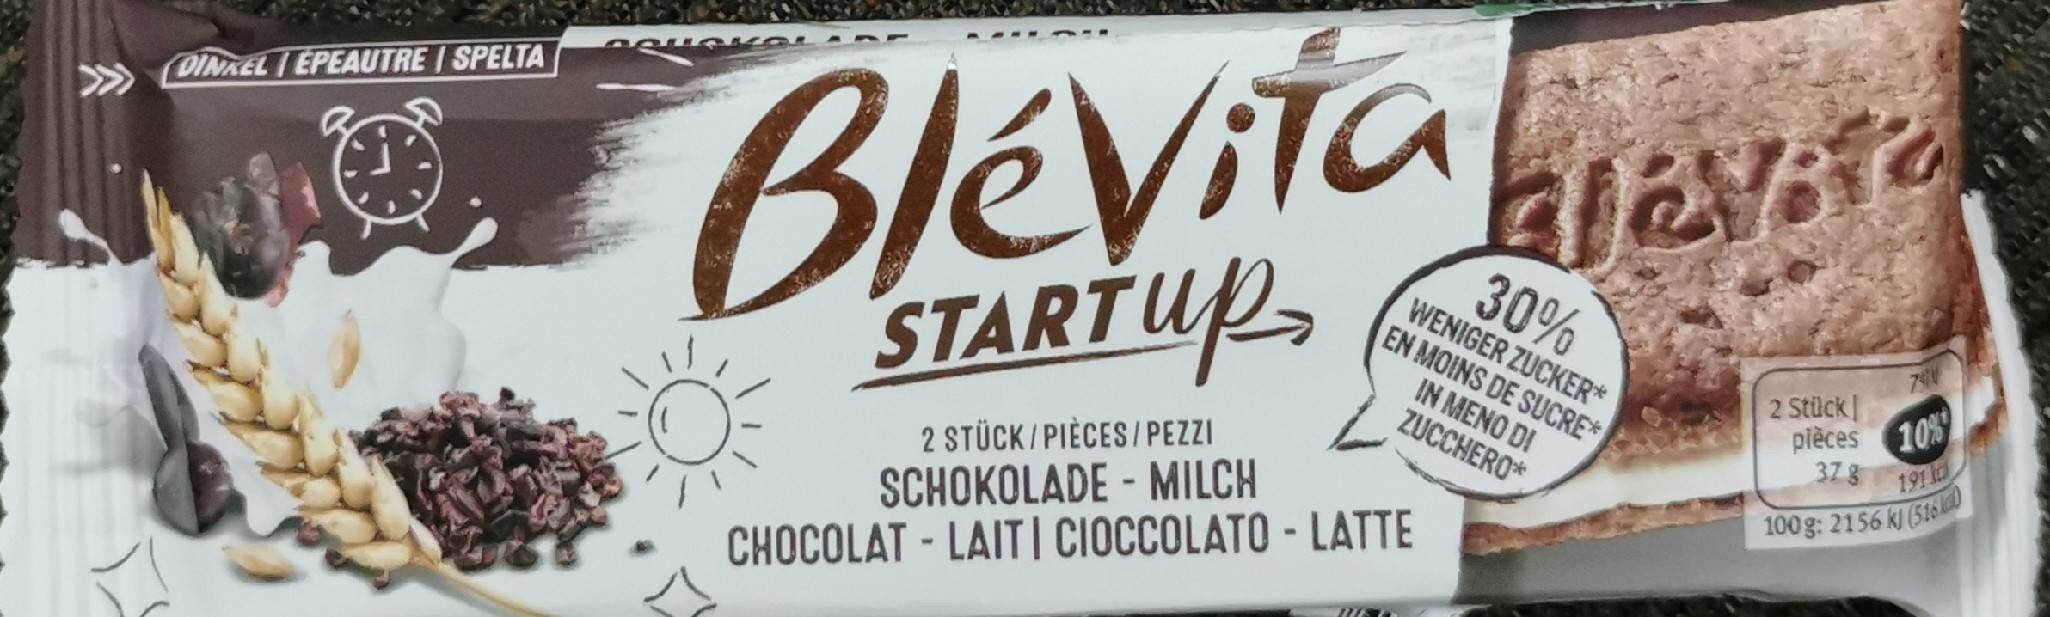 Blevita start up - Product - fr